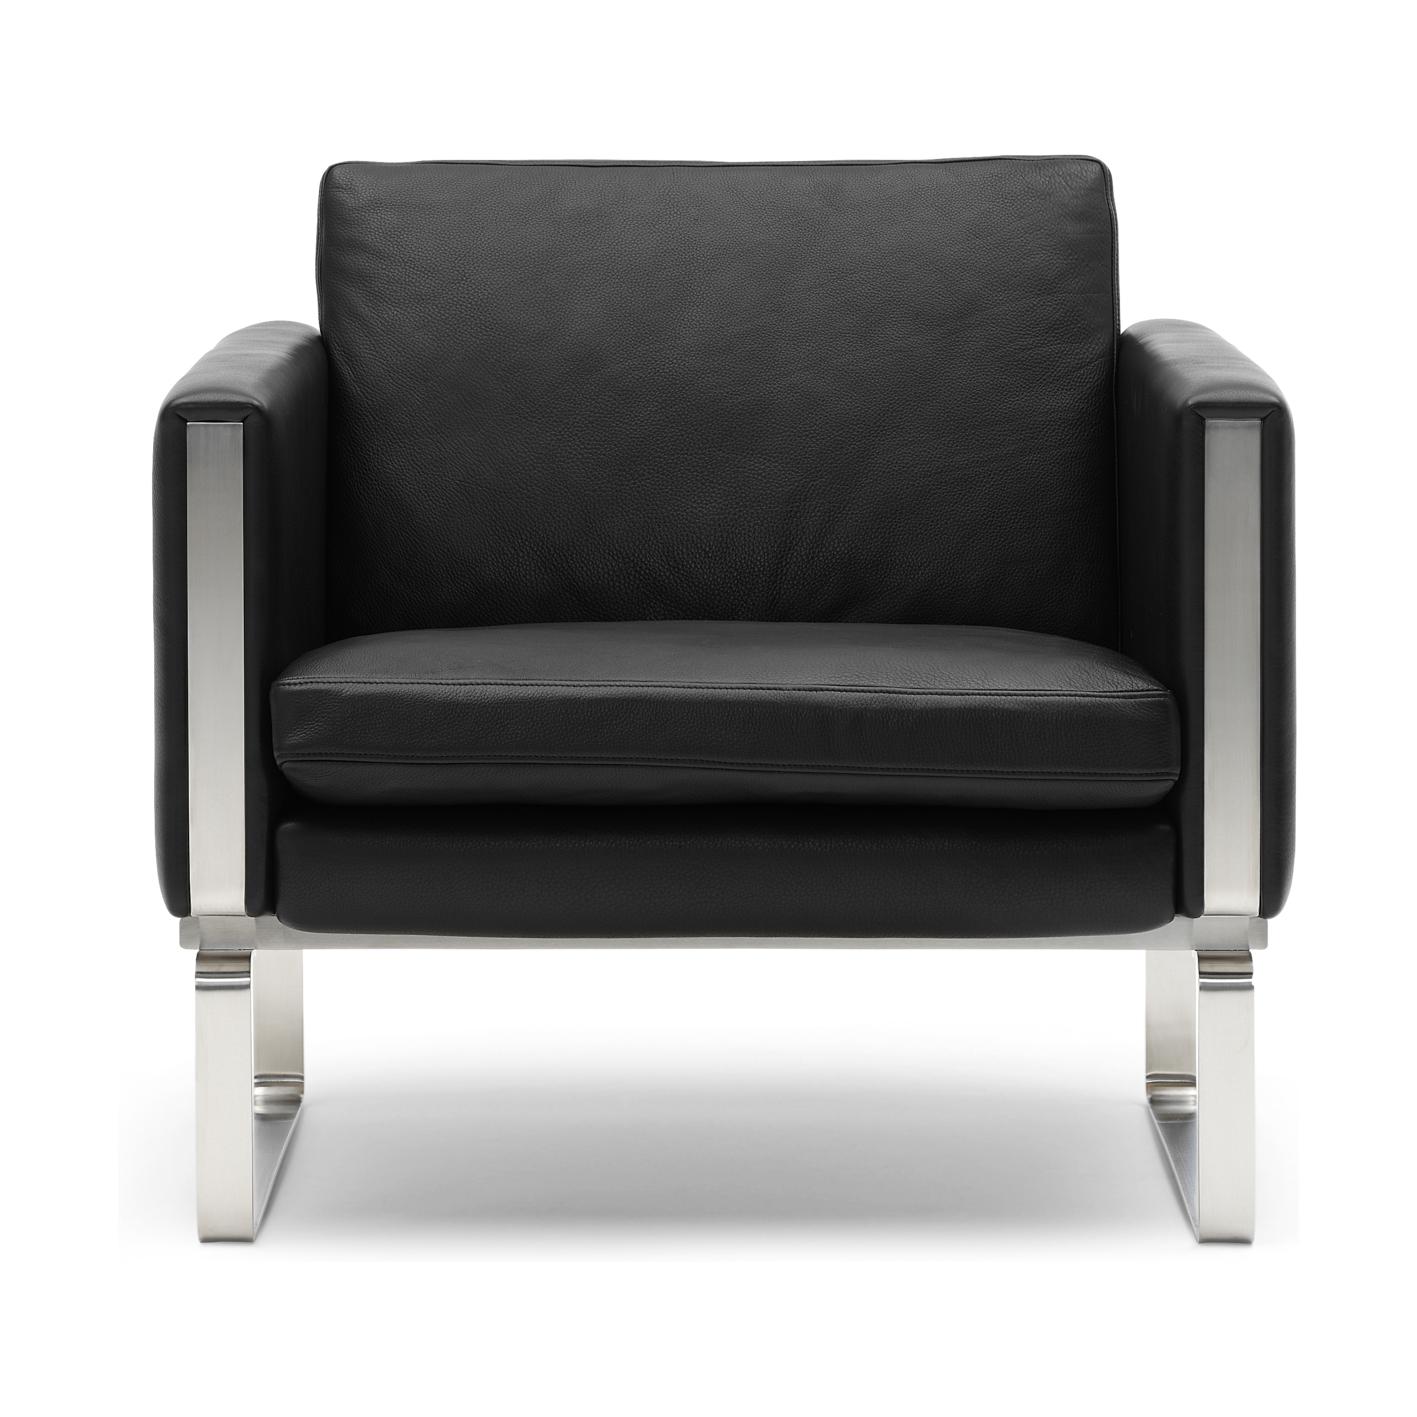 Carl Hansen CH101 Salonowa krzesło stali nierdzewne, czarna skóra (Thor 301)